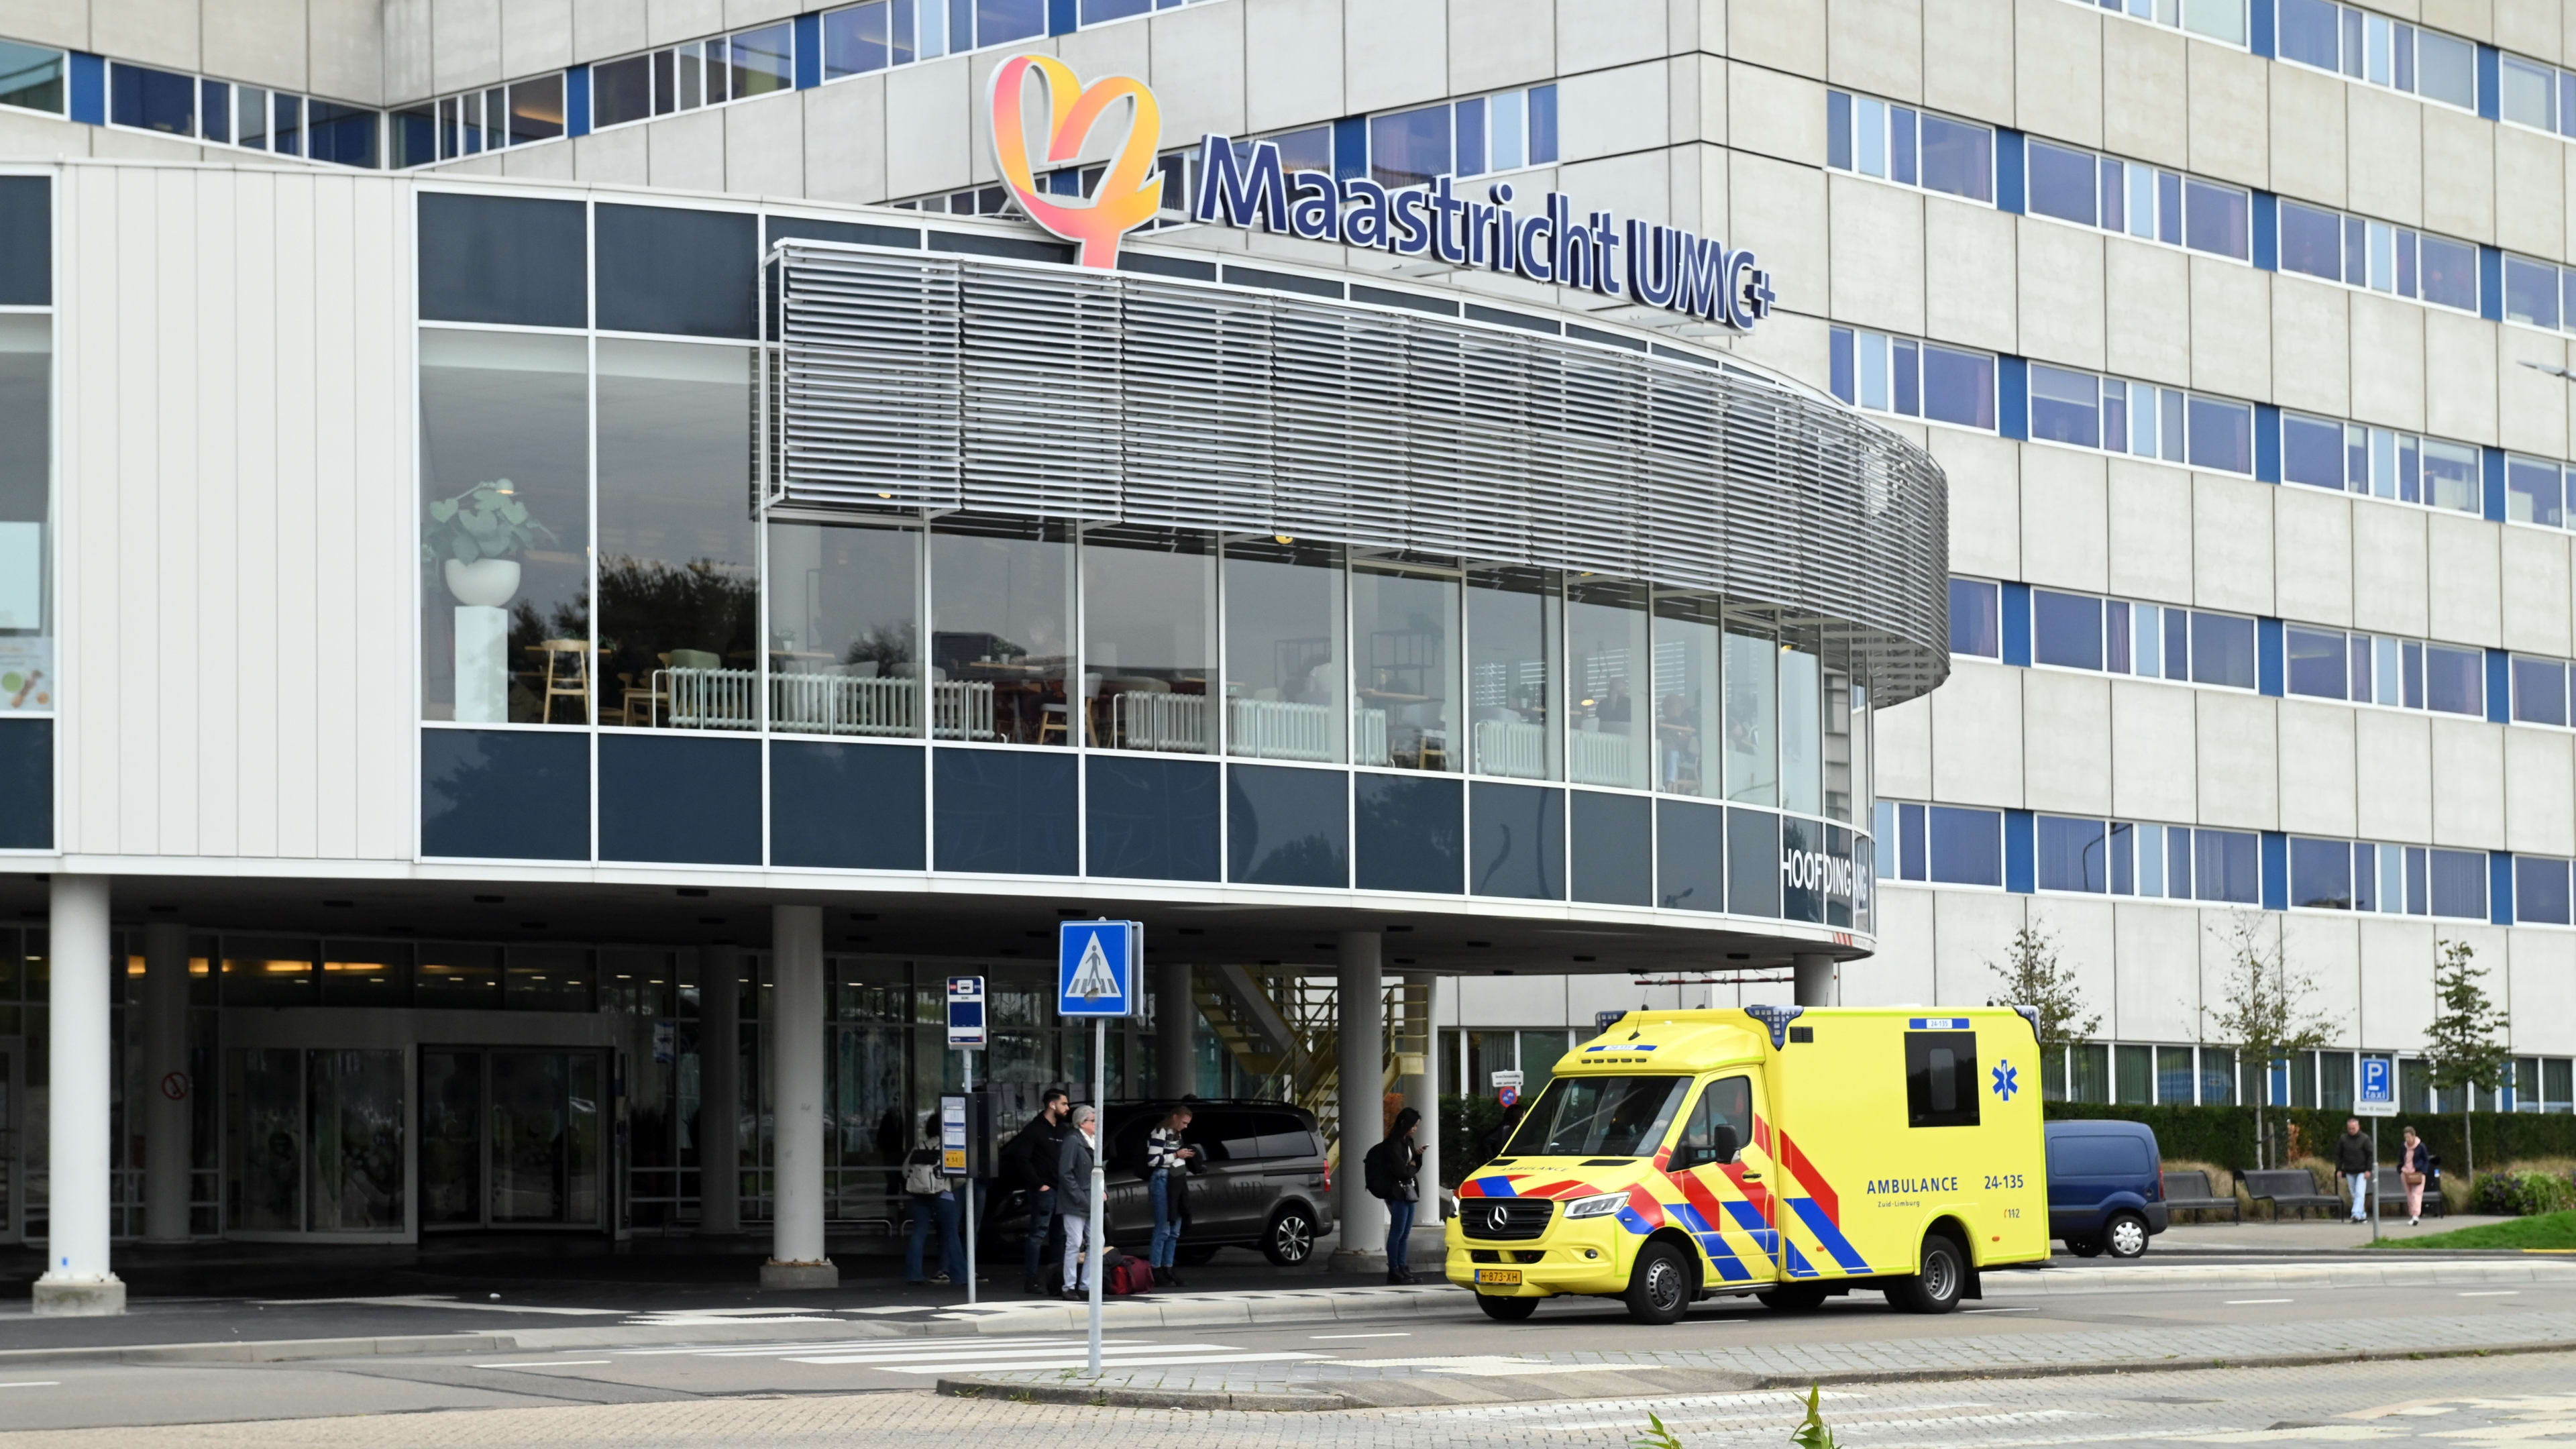 Russische cyberaanval raakte ook ziekenhuis Maastricht en instantie tegen cyberaanvallen